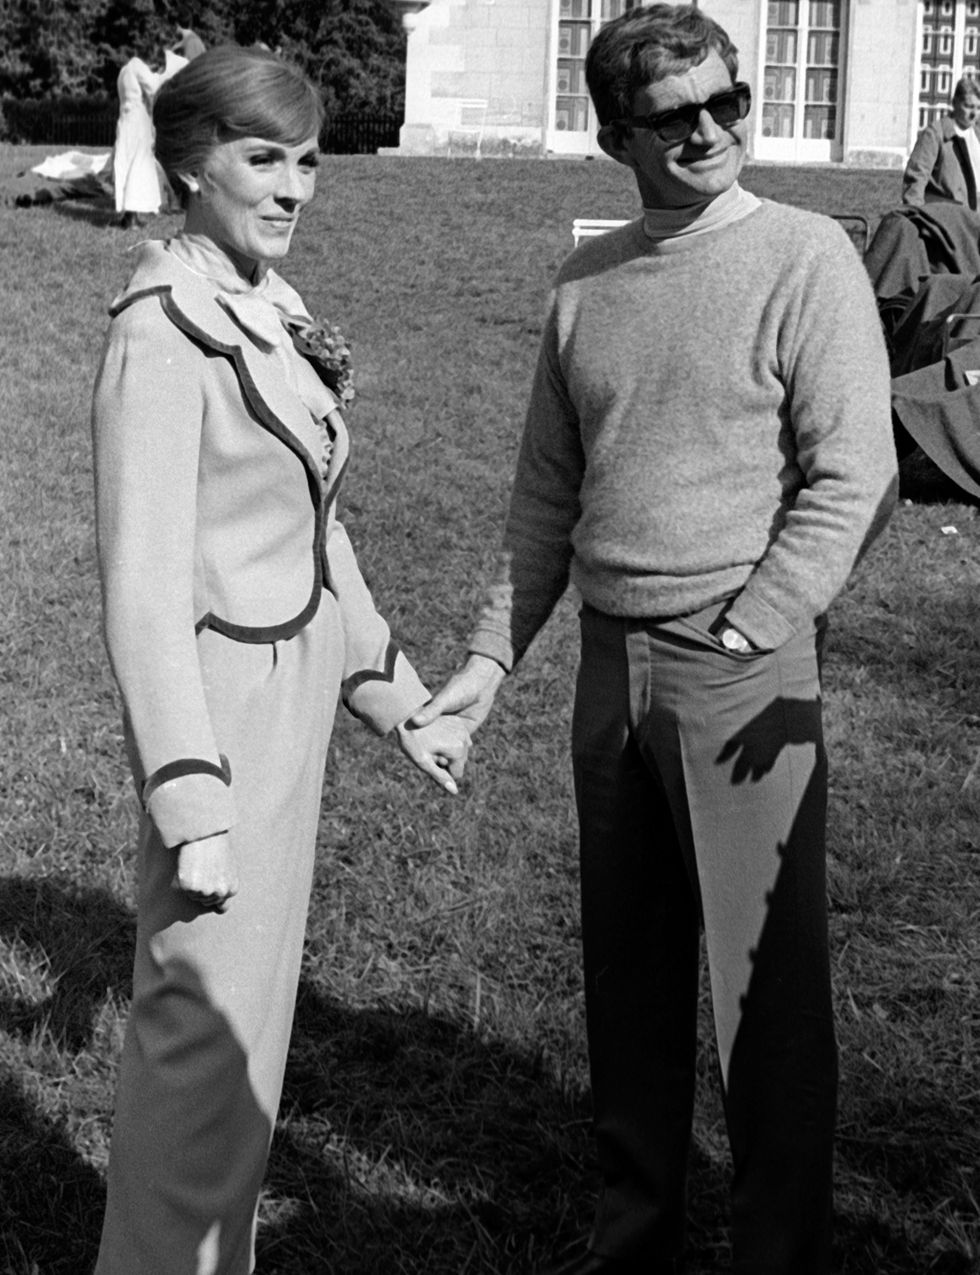 <p>Una de las parejas más adorables de Hollyeood. Andrews y Edwards rodaron ‘Darling Lili’ en 1968, en la que ella era la estrella y él, el director. Él era famoso por haber dirigido ‘Desayuno con diamantes’ y ella también había triunfado con ‘Sonrisas y lágrimas’ . Se casaron al año siguiente.</p>